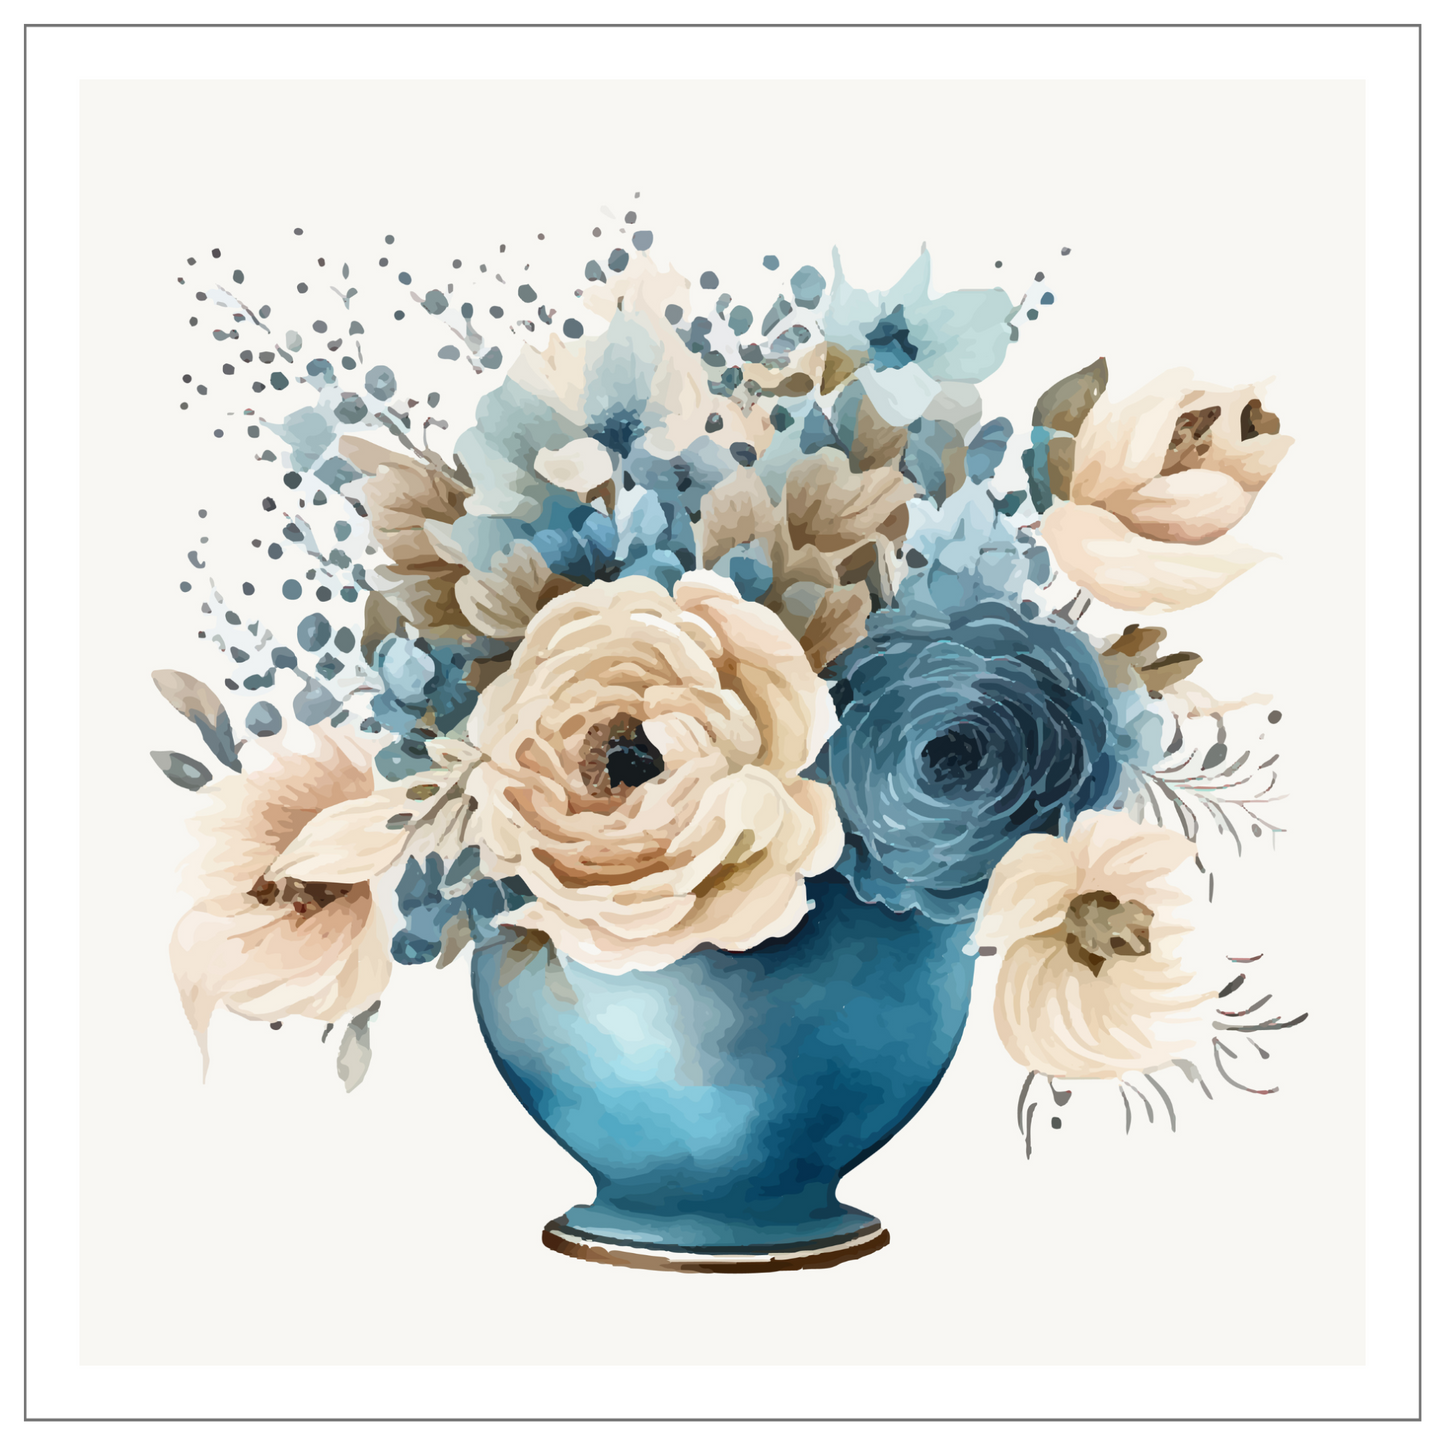 Blomstermotiv i vannfarger. Blå vase med rosebukett i beige og blått. Plakaten har hvit dekorativ kant.